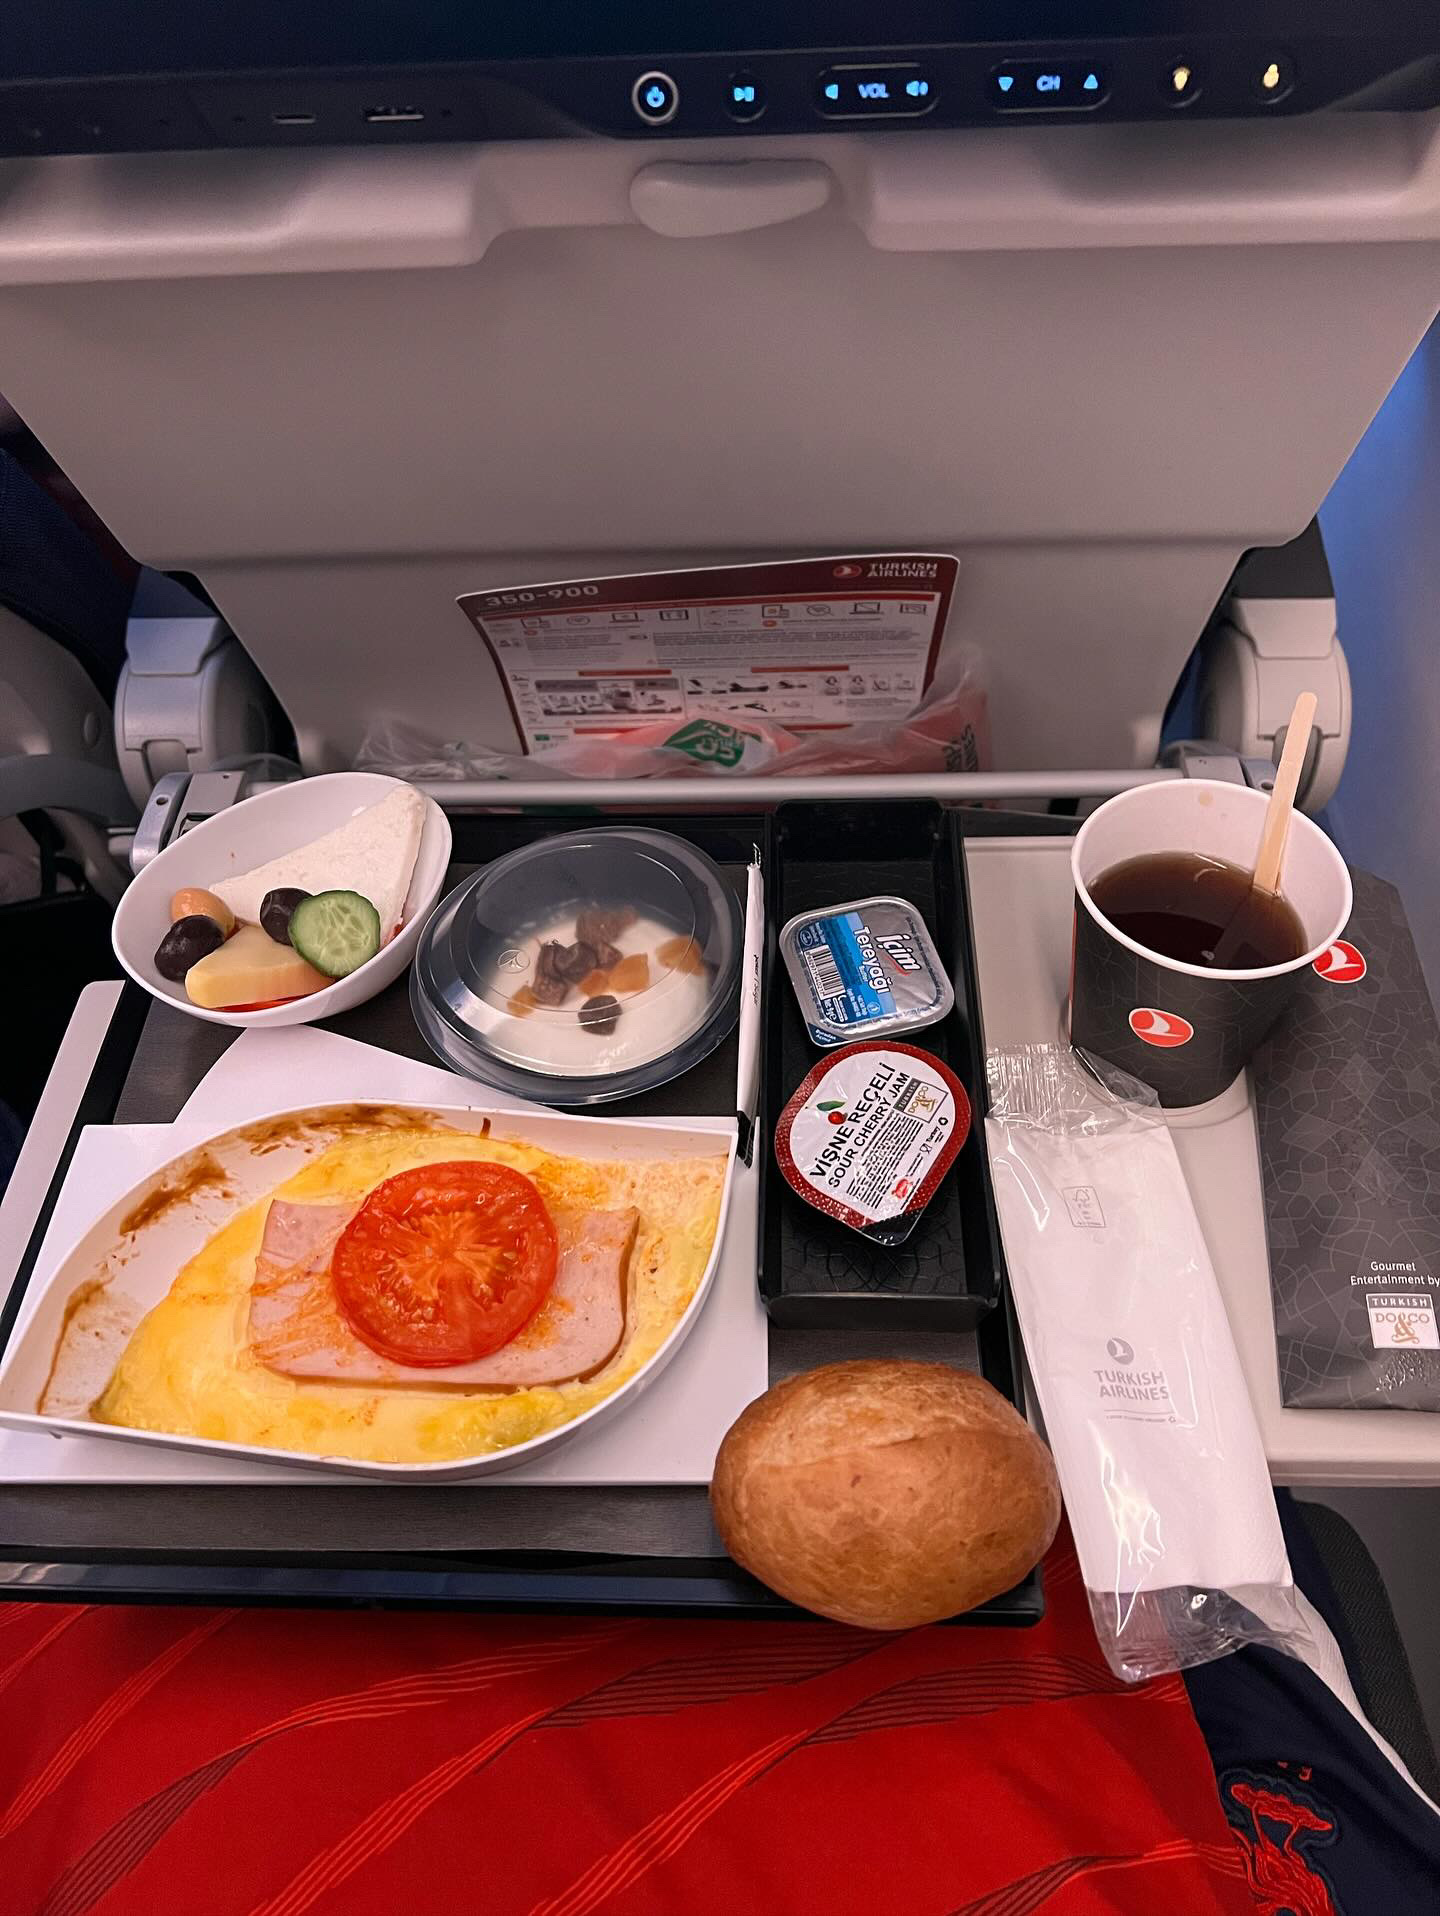 Türk Hava Yolları Economy Class Yemek İkramı (İstanbul – Sao Paulo)